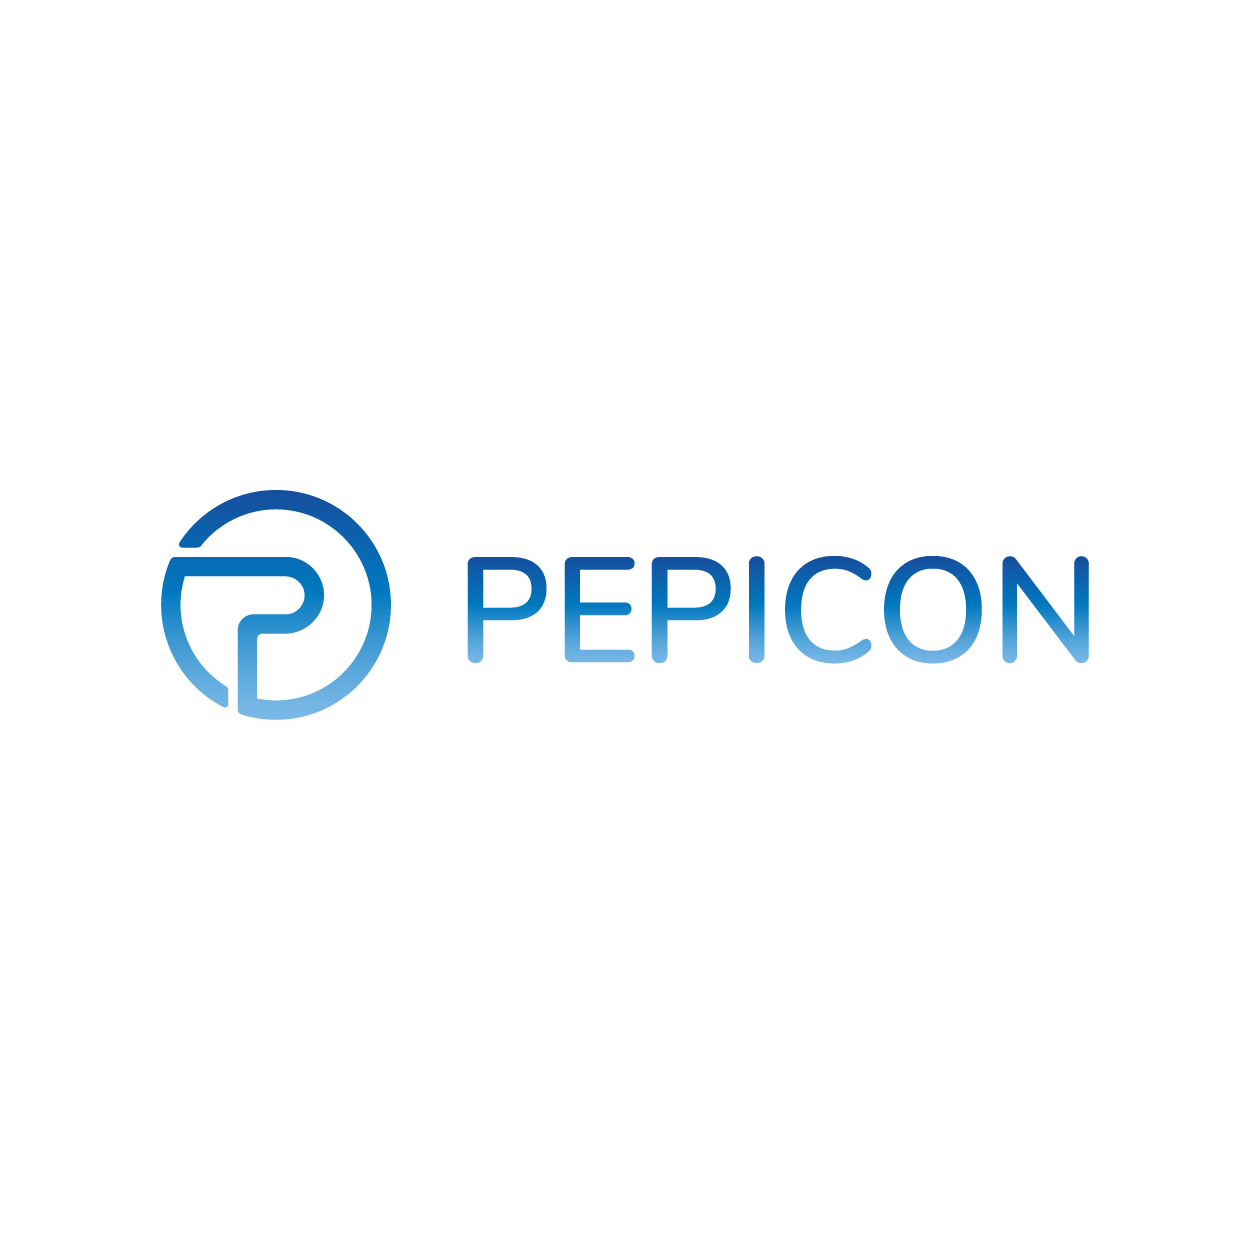 Pepicon